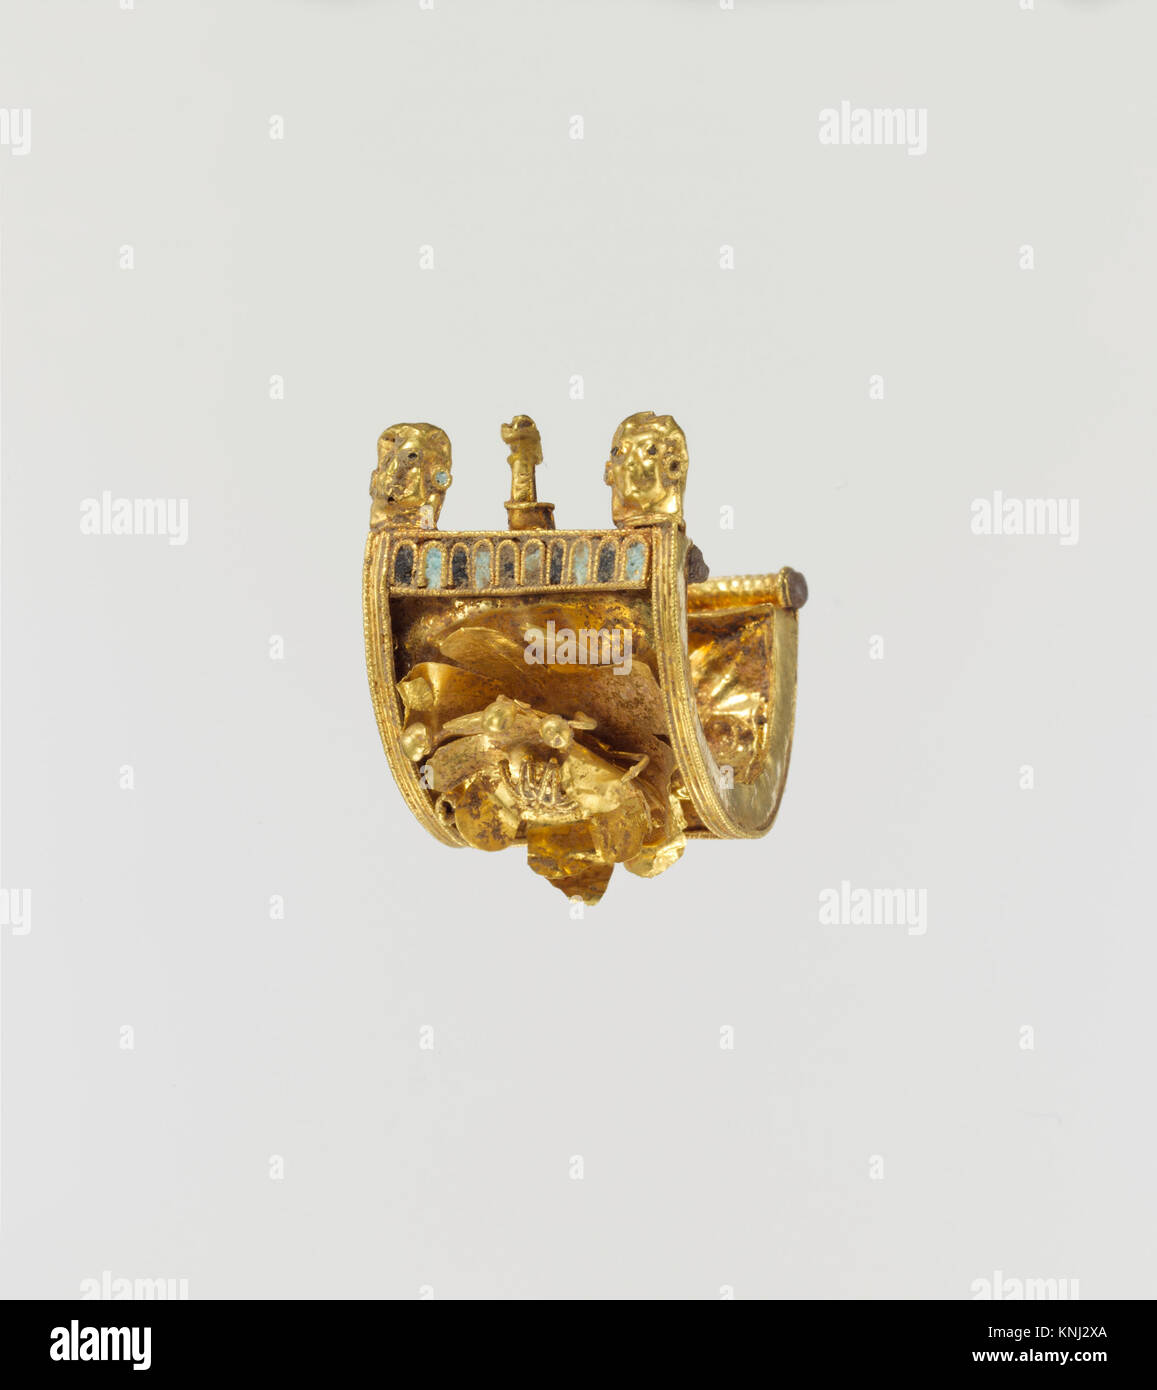 Orecchino a baule in oro e smalto, periodo: Arcaico, vi secolo a.C., Cultura: Etrusca, Medio: Oro, smalto Foto Stock